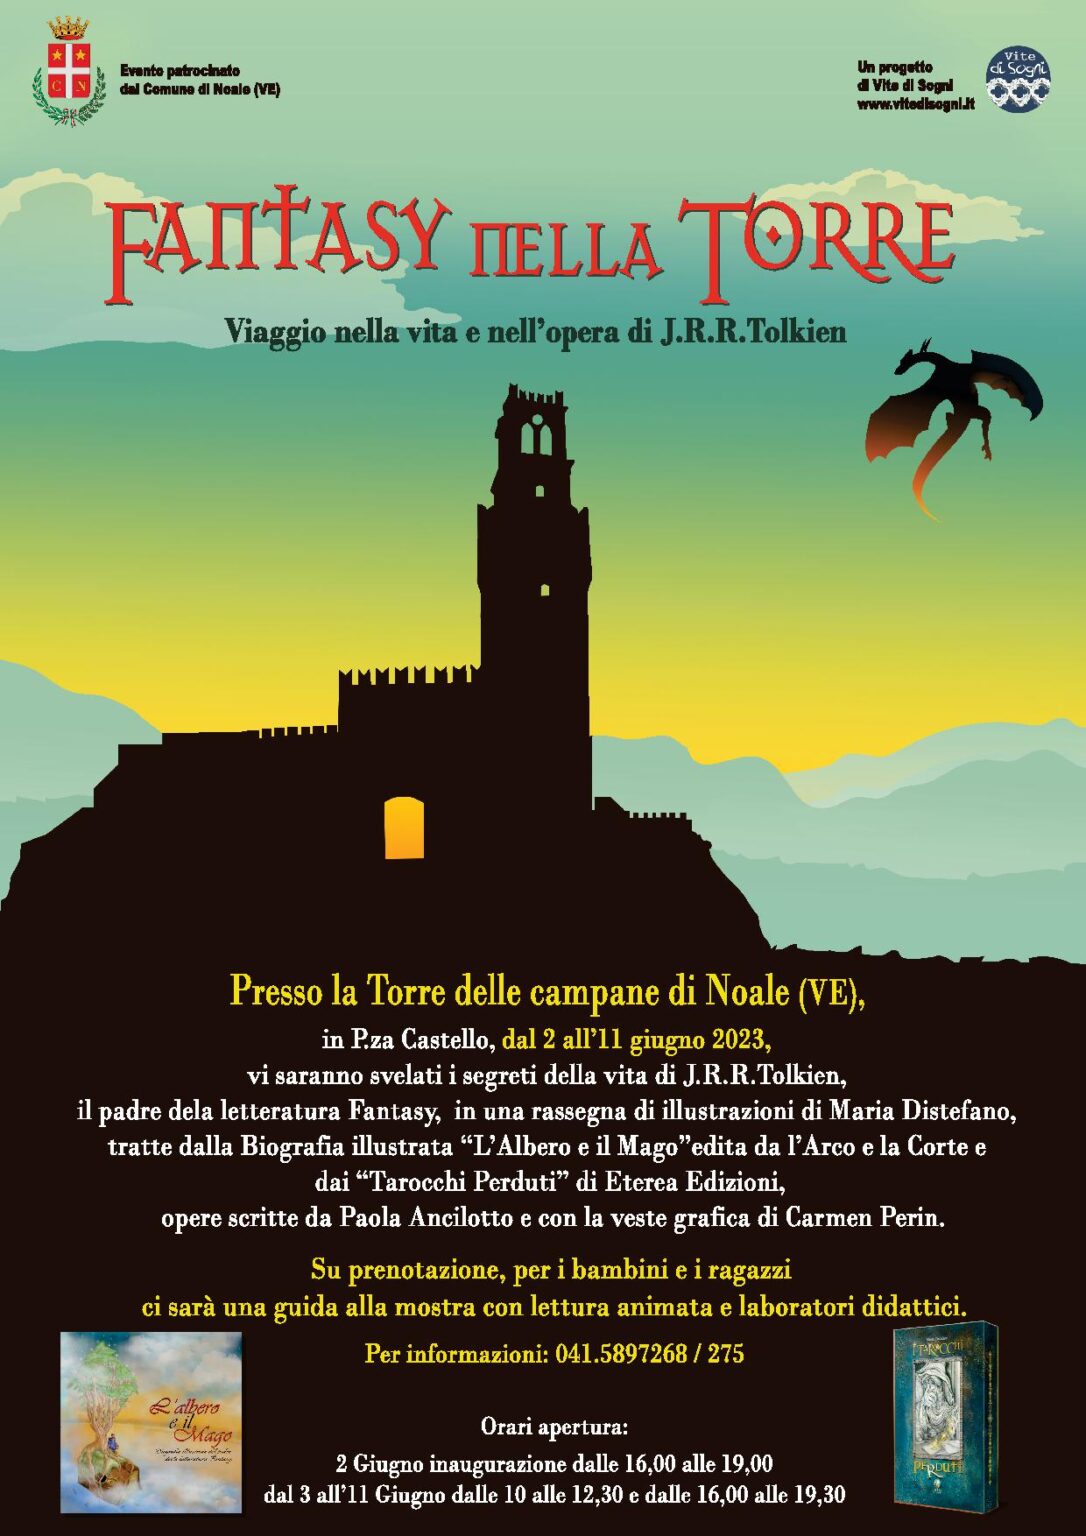 Fantasy nella Torre. Viaggio nella vita e nell’opera di J.R.R. Tolkien